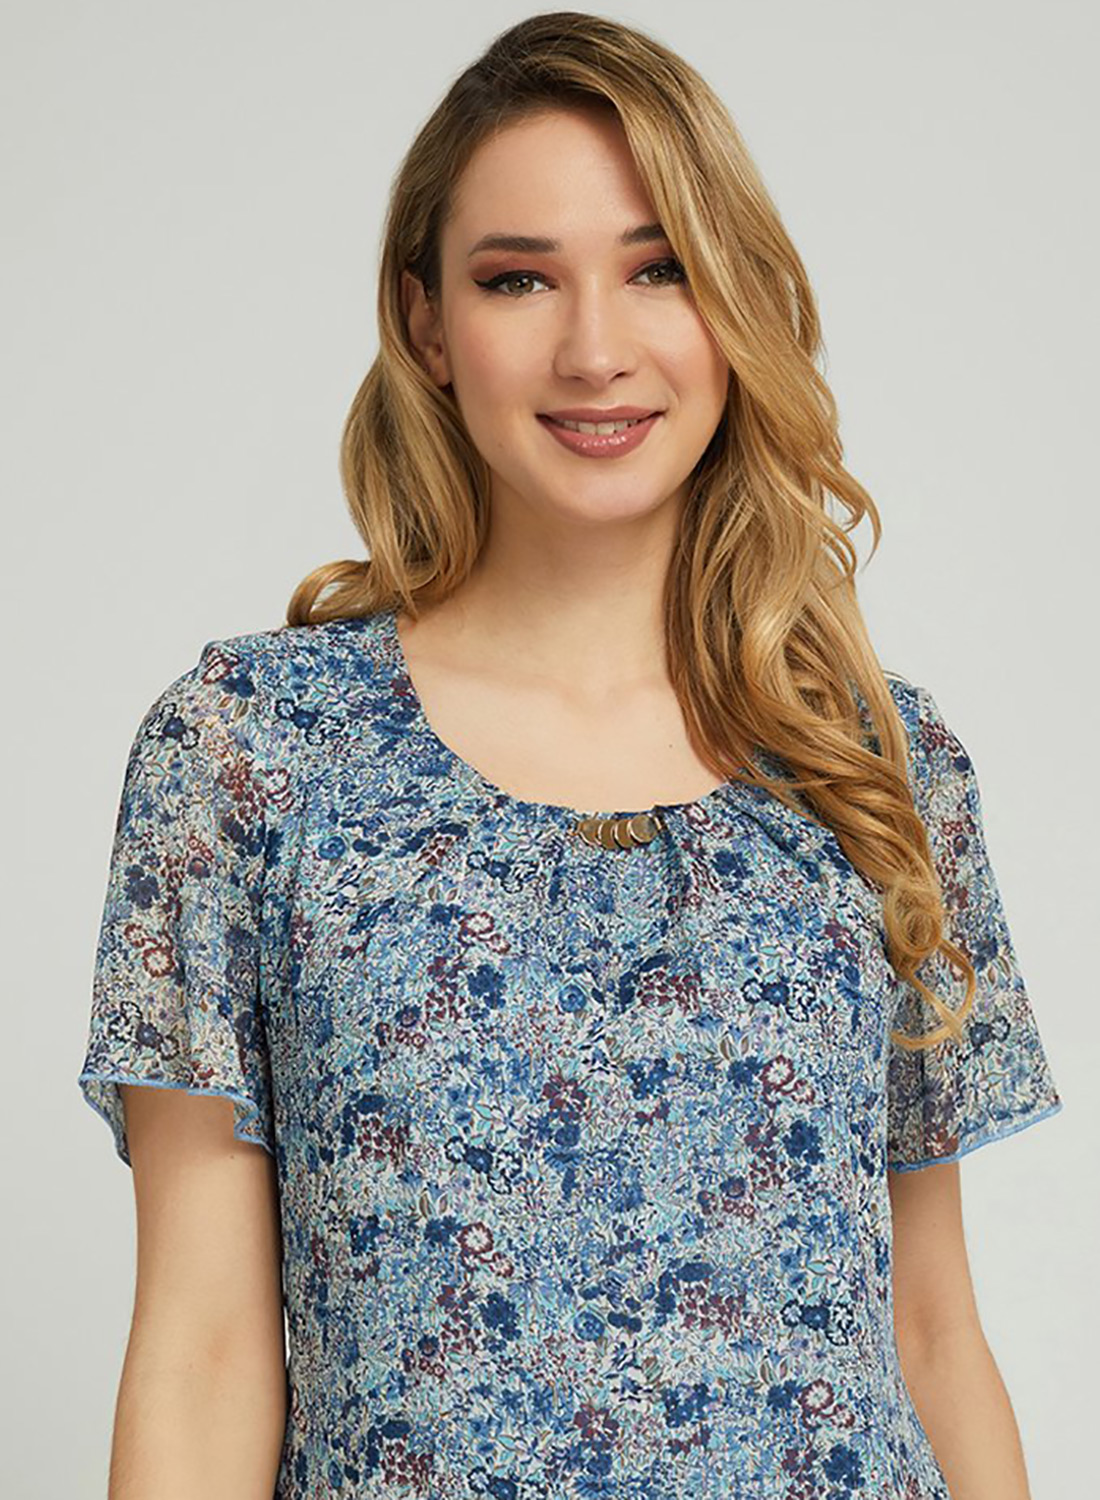 Μπλε κομψή μπλούζα με φλοράλ σχέδιο